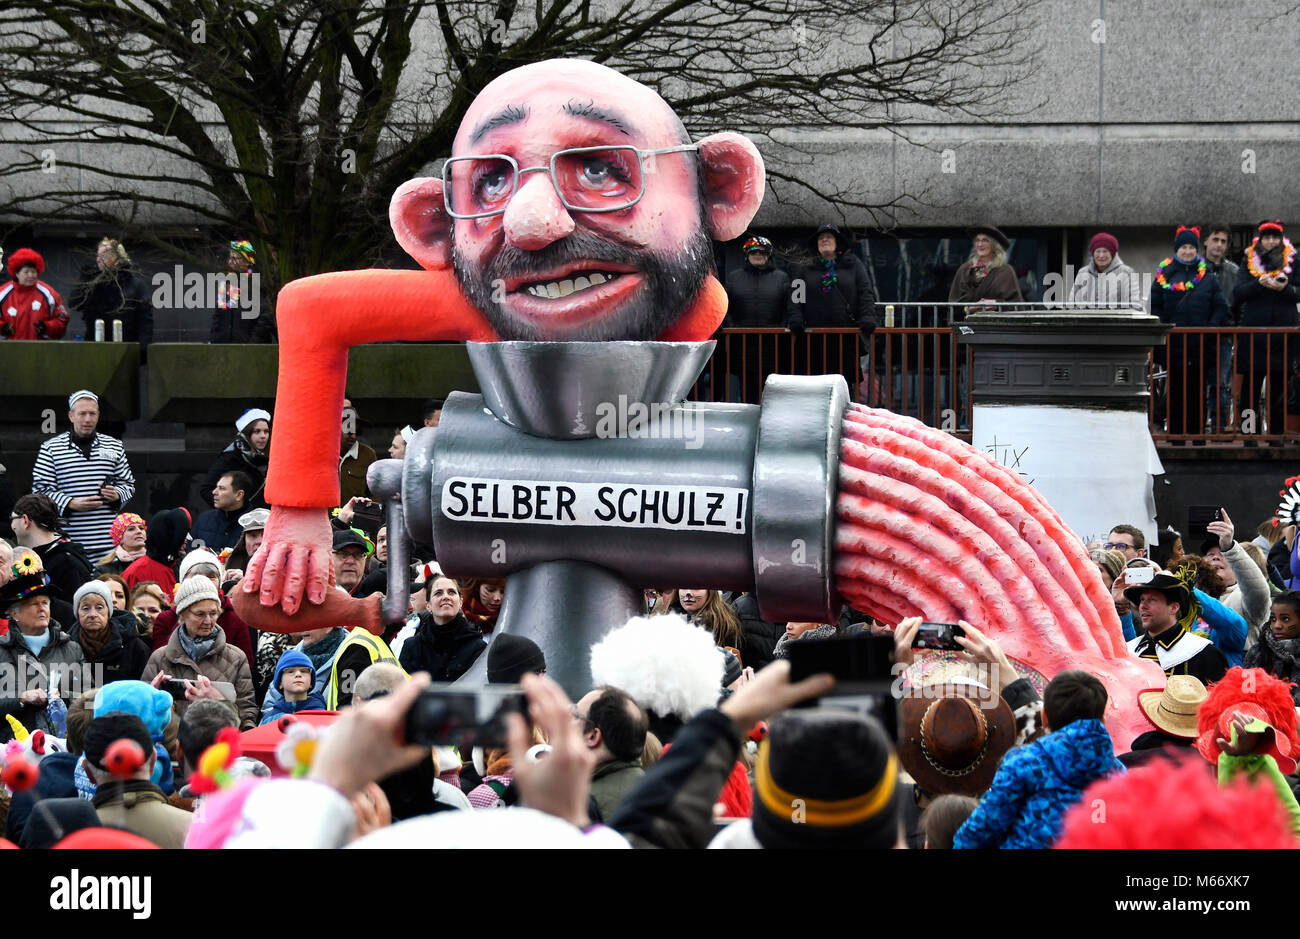 Sfilata di Carnevale con vetture a tema da parte del carro builder Jaques Tilly, SPD Martin Schulz, Selber Schulz, Düsseldorf Foto Stock